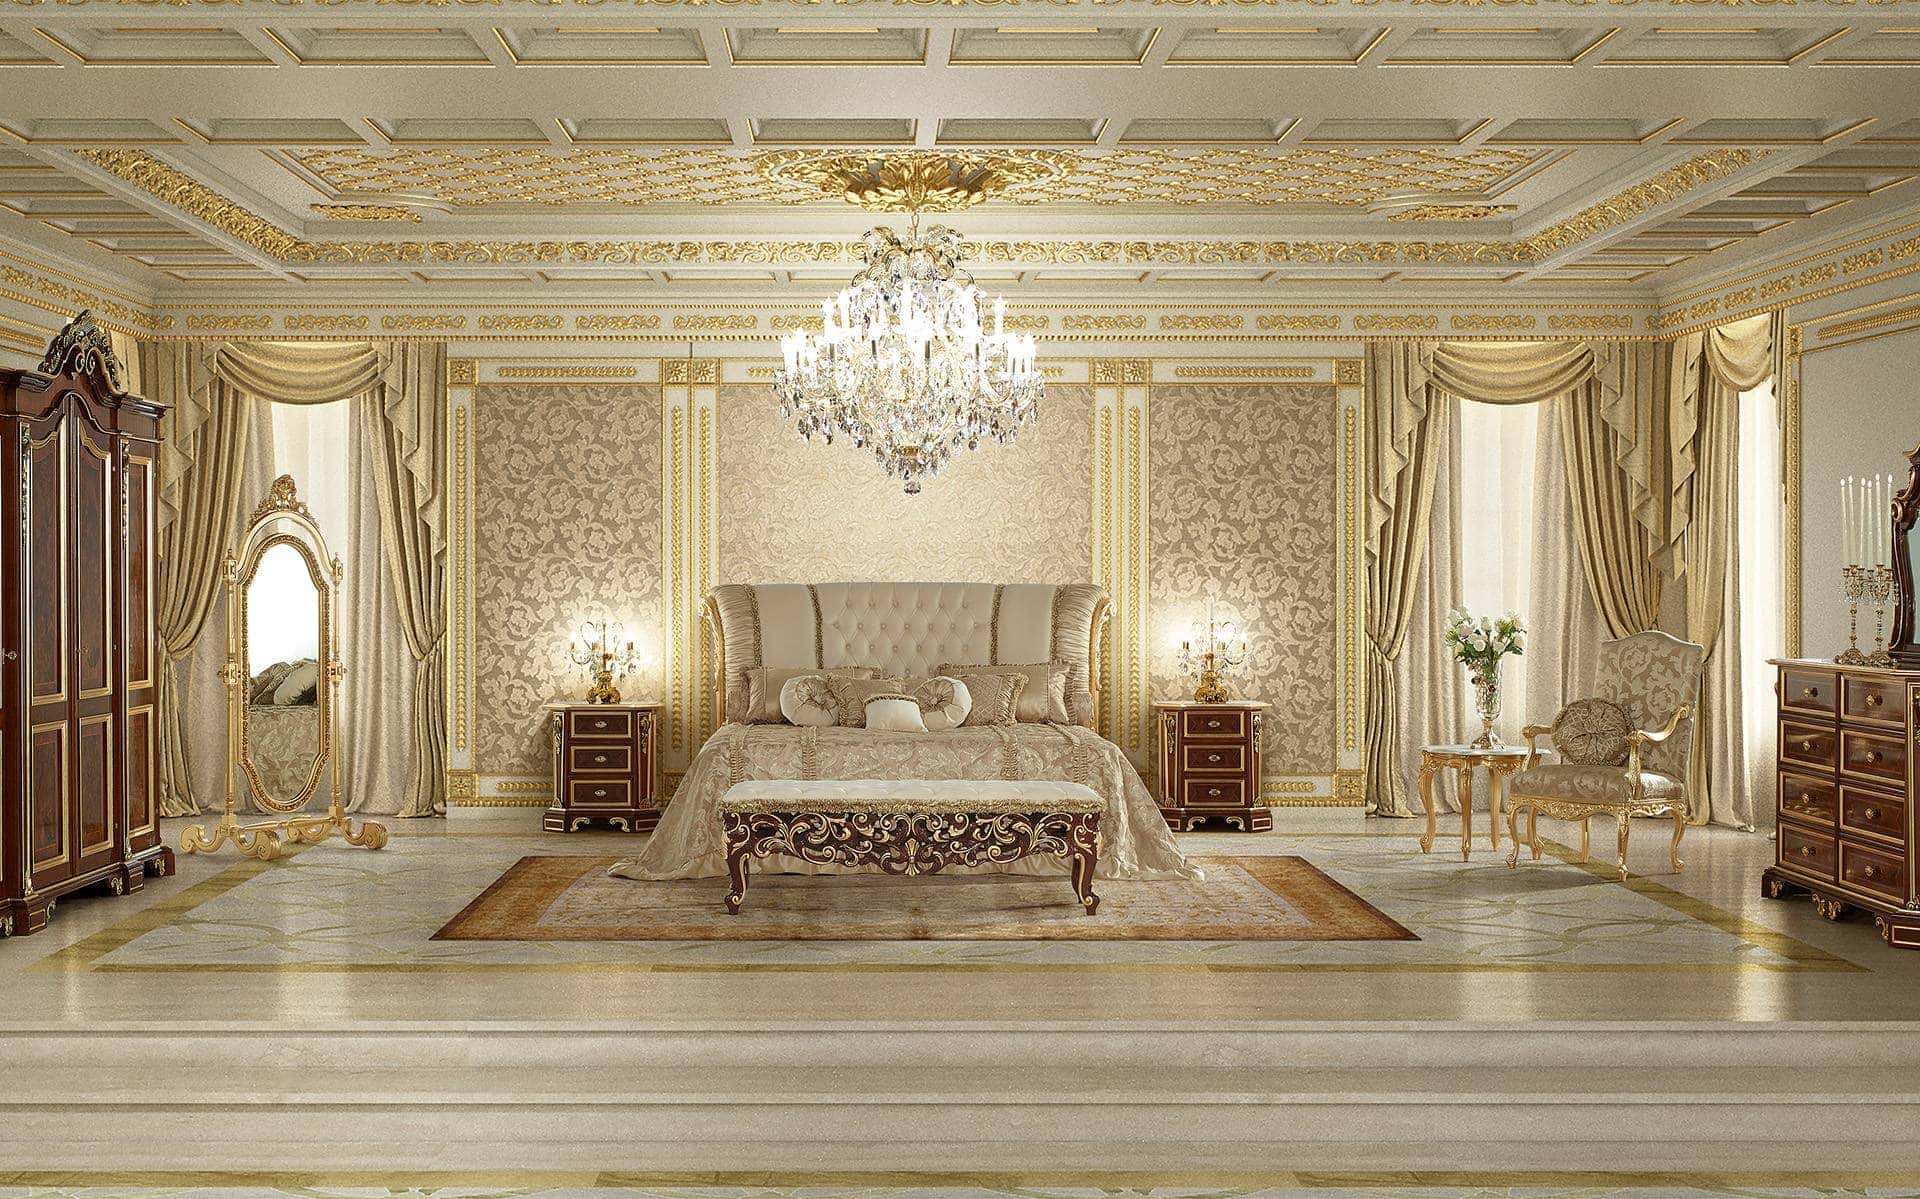 美丽而精致的主卧室经典内饰，采用实木材料，意大利制造的高端品质。为最精致的皇家宫殿、别墅和家居装饰而定制的卧室家具。手工金叶细节装饰。最佳品质和顶级设计的双人床、豪华床头柜、优雅的坐垫凳、巴洛克风格的衣柜、威尼斯风格梳妆台。蕴涵精致设计和独特意大利制造工艺的经典定制家具。